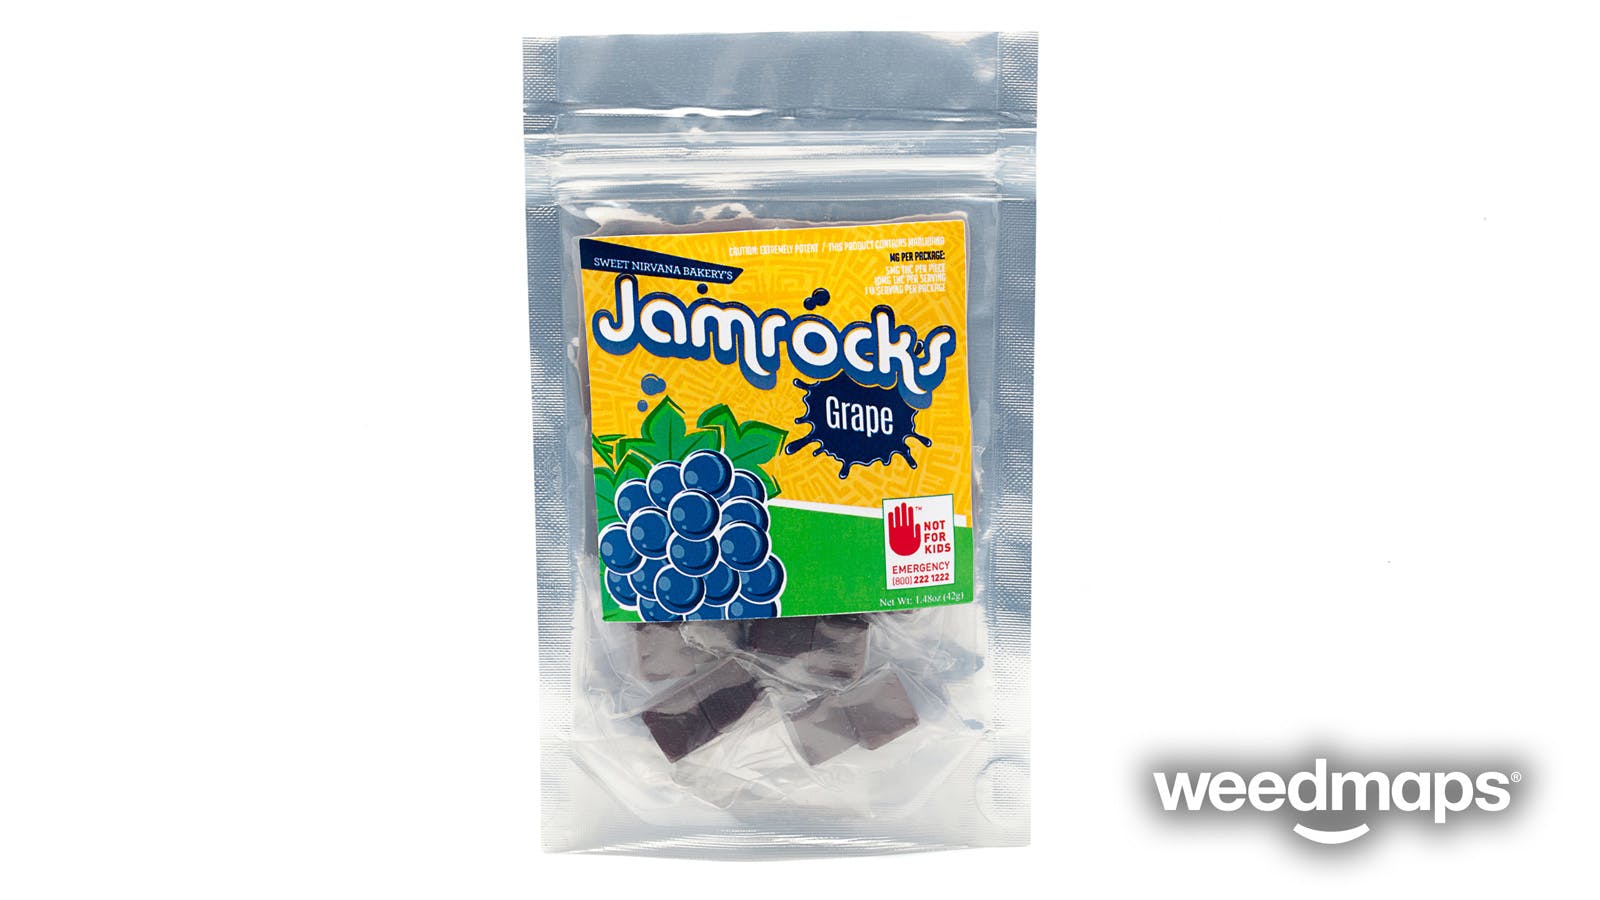 edible-jamrocks-grape